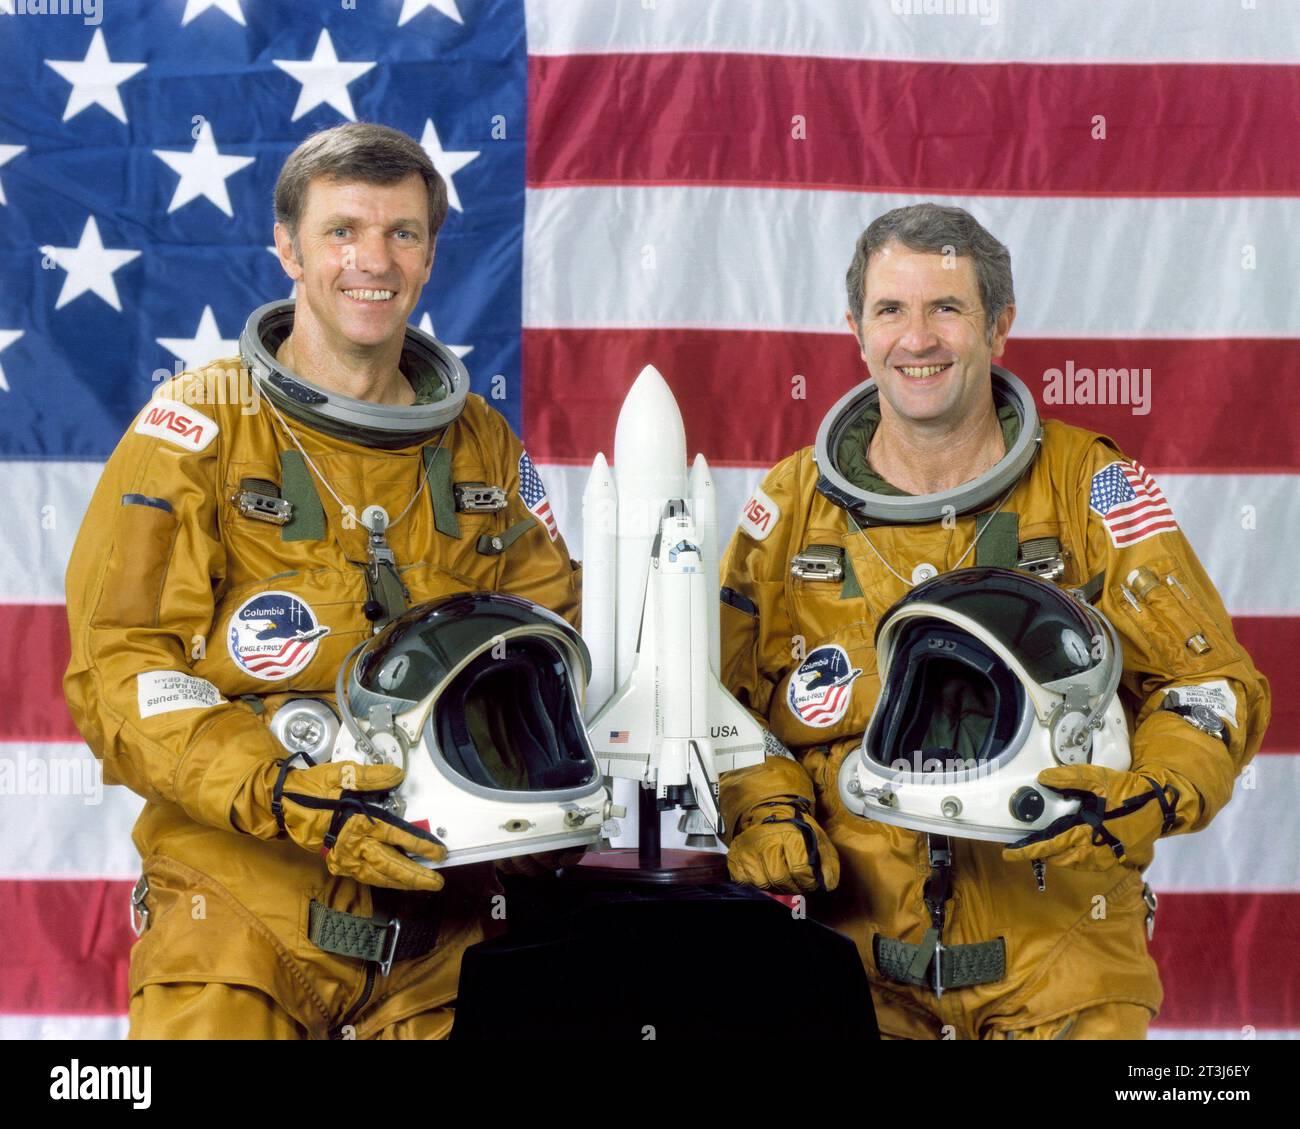 Die STS-2 Prime Crew bestand aus Commander Joe Engle und Pilot Richard, die wirklich vor einer amerikanischen Flagge standen und ihre Helme mit einem Shuttle-Modell auf dem Tisch vor ihnen hielten. Stockfoto